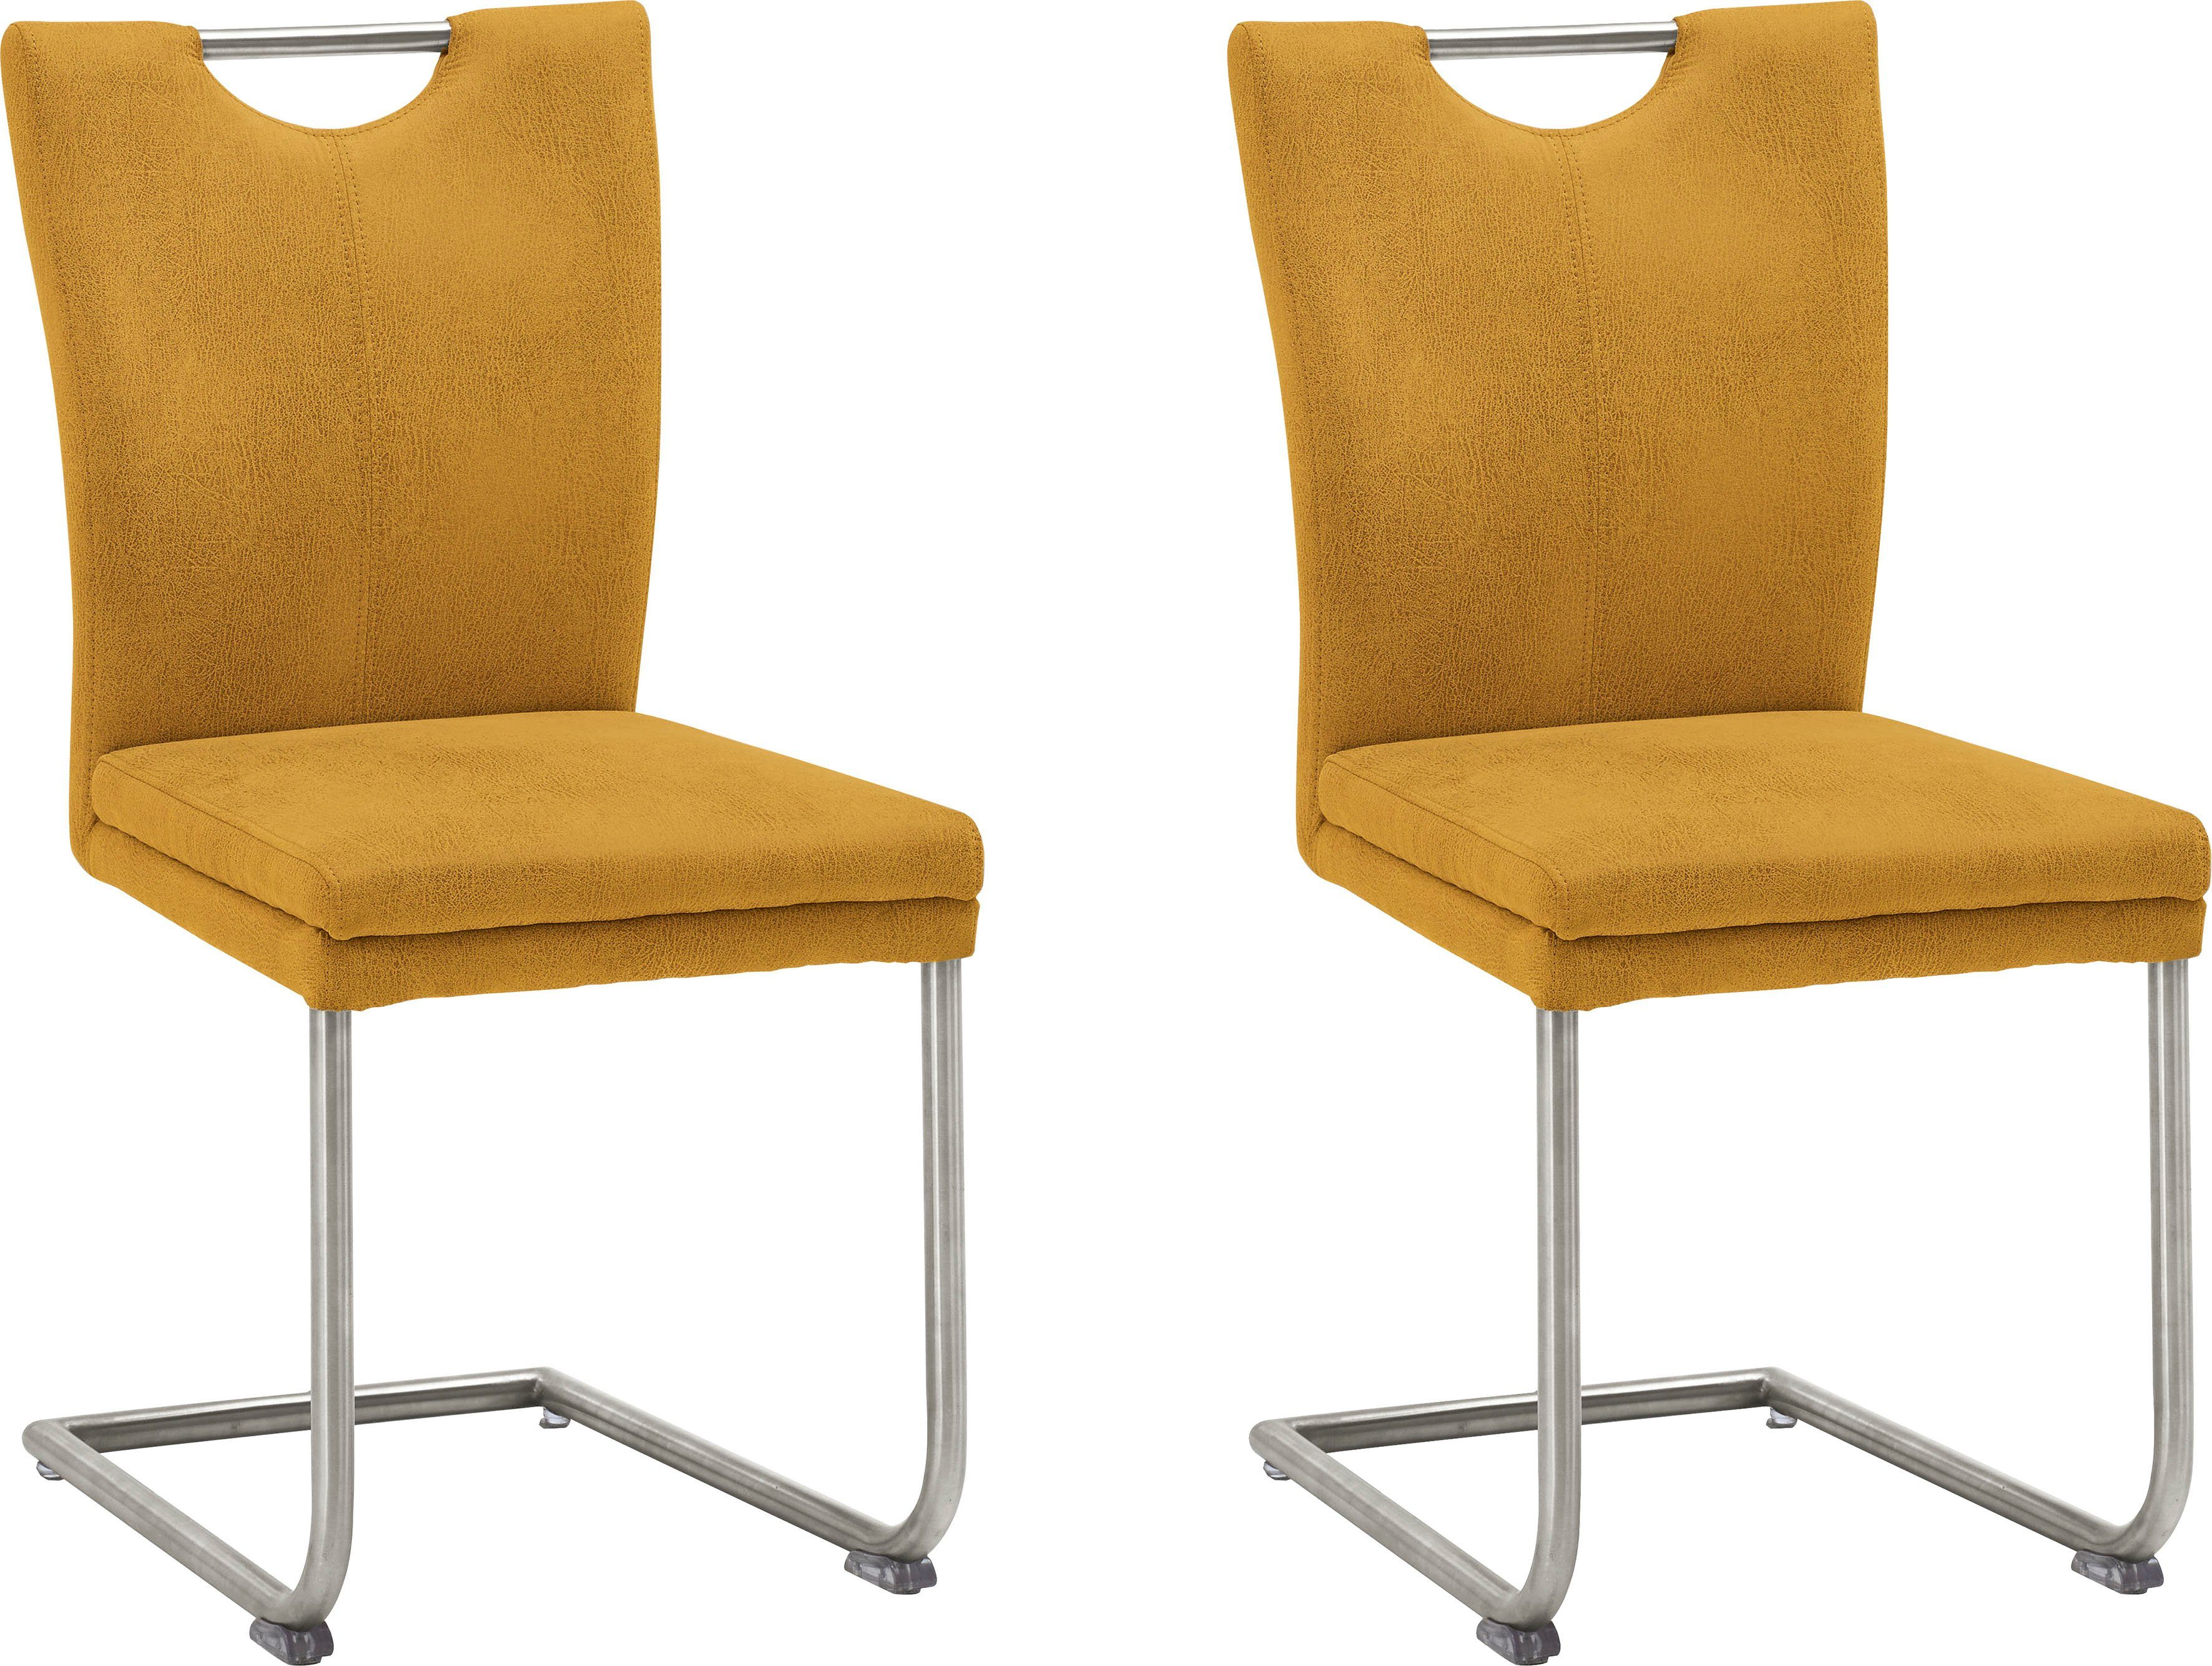 NIEHOFF SITZMÖBEL Esszimmerstuhl Top Chairs, Griff im Rücken, 2er-Set, in 6 Farben gelb